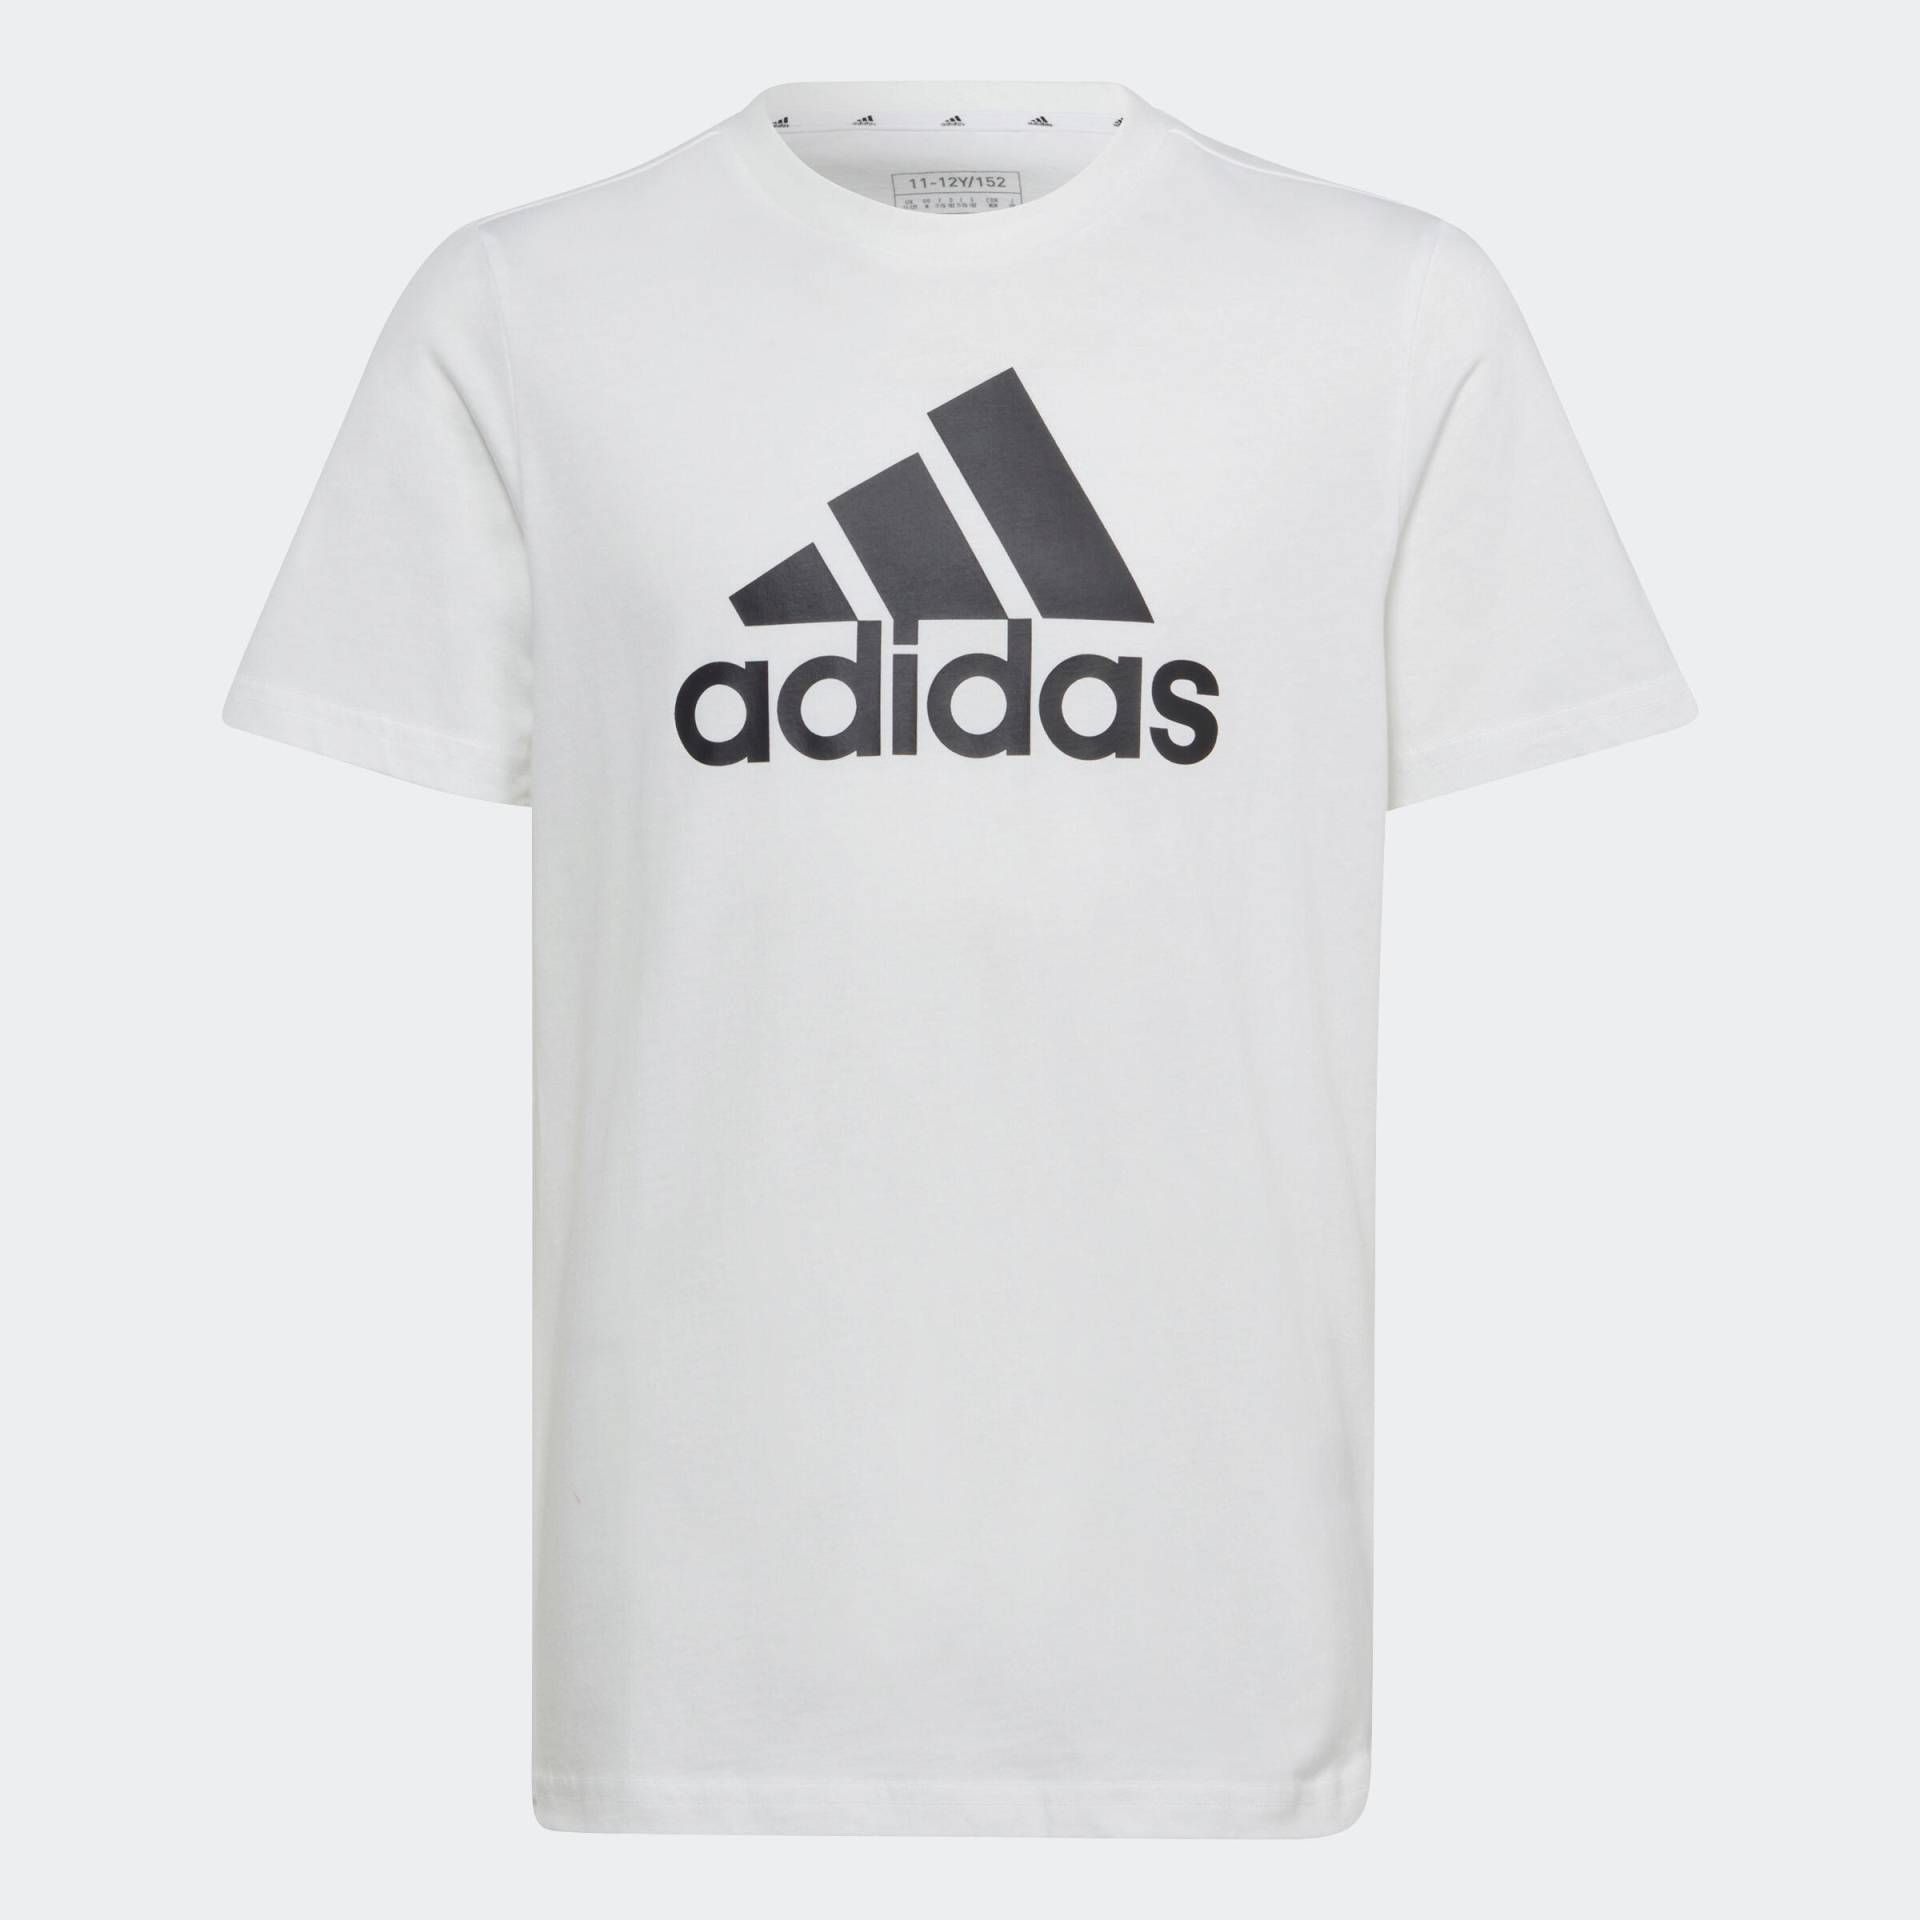 ADIDAS T-Shirt Kinder ‒ weiss mit schwarzem Logo von Adidas